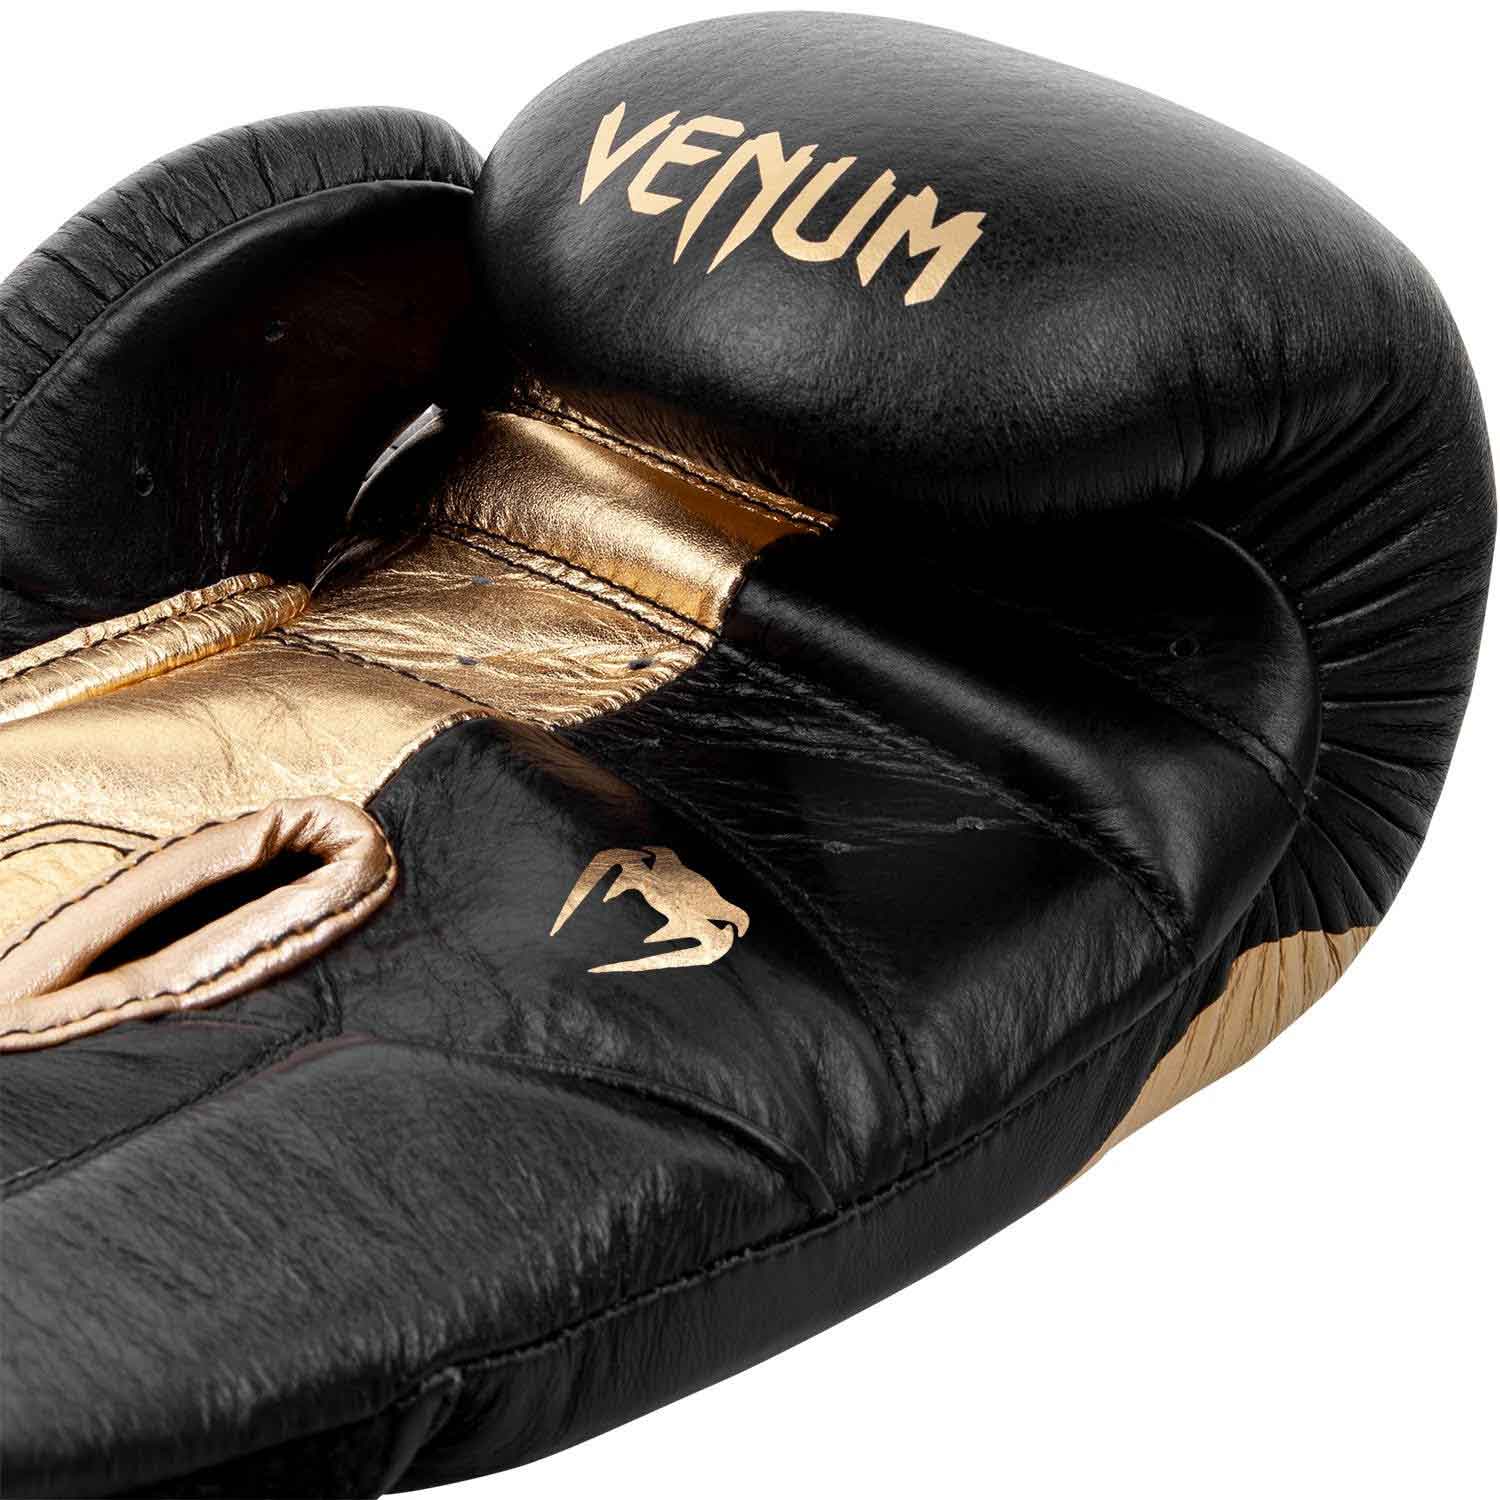 VENUM／ヴェナム　ボクシンググローブ　　GIANT 2.0 PRO BOXING GLOVES VELCRO／ジャイアント 2.0 プロボクシング・グローブ ベルクロ（黒／ゴールド）